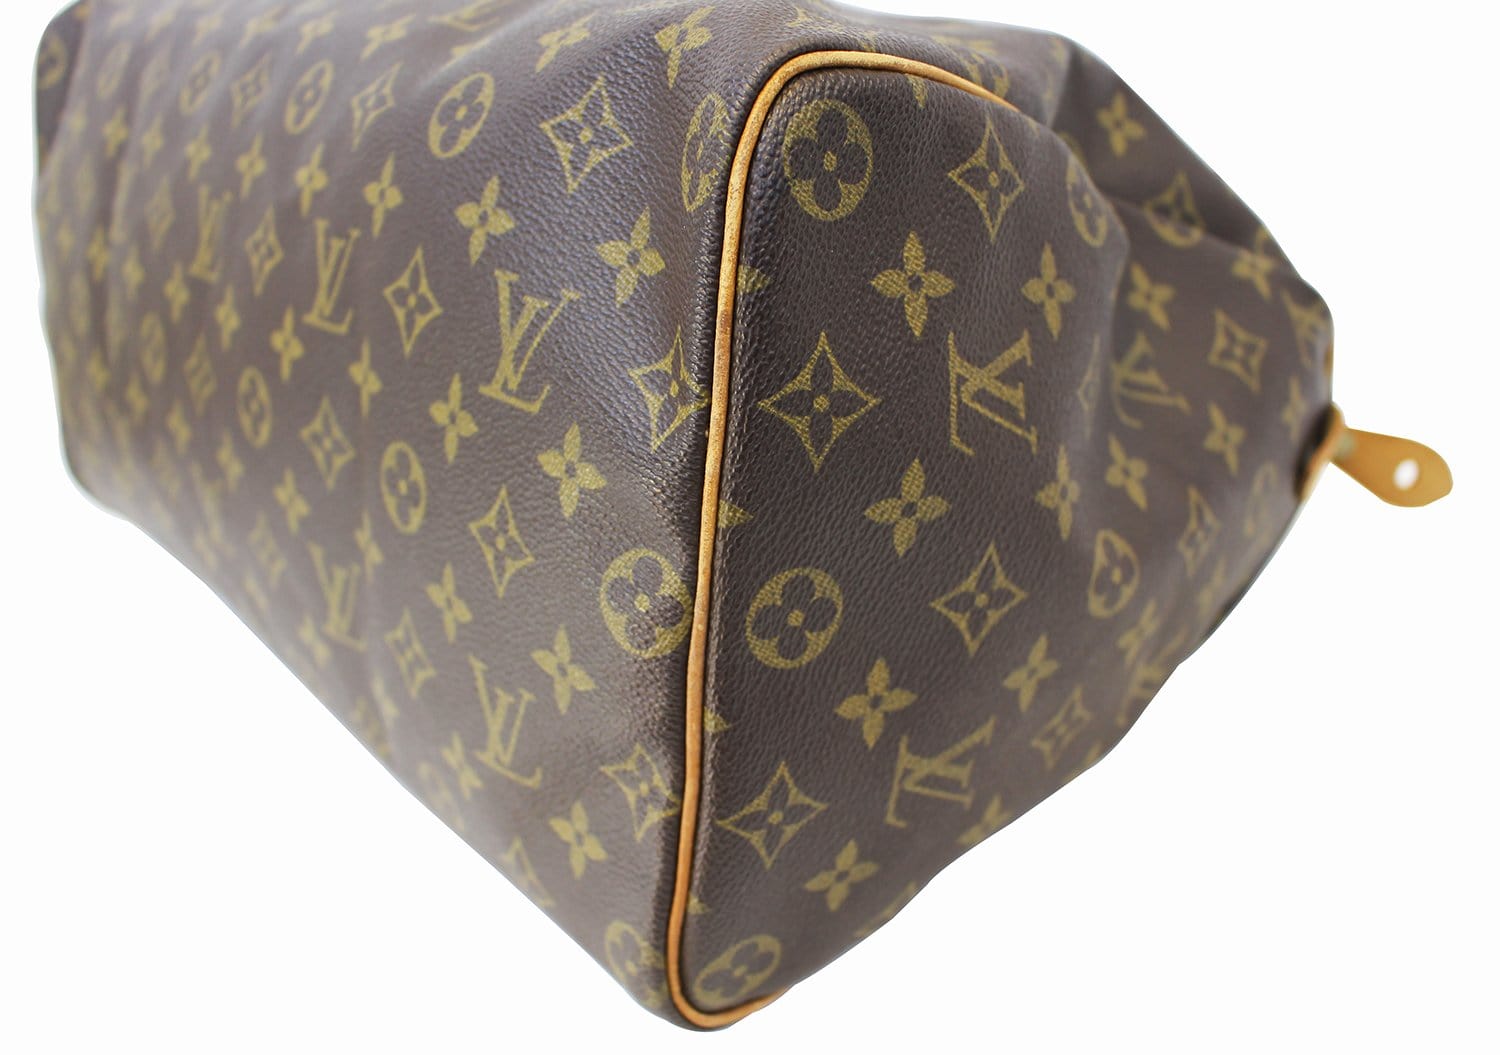 Authentic Louis Vuitton Speedy 40 Monogram Handbag for Sale in West Palm  Beach, FL - OfferUp